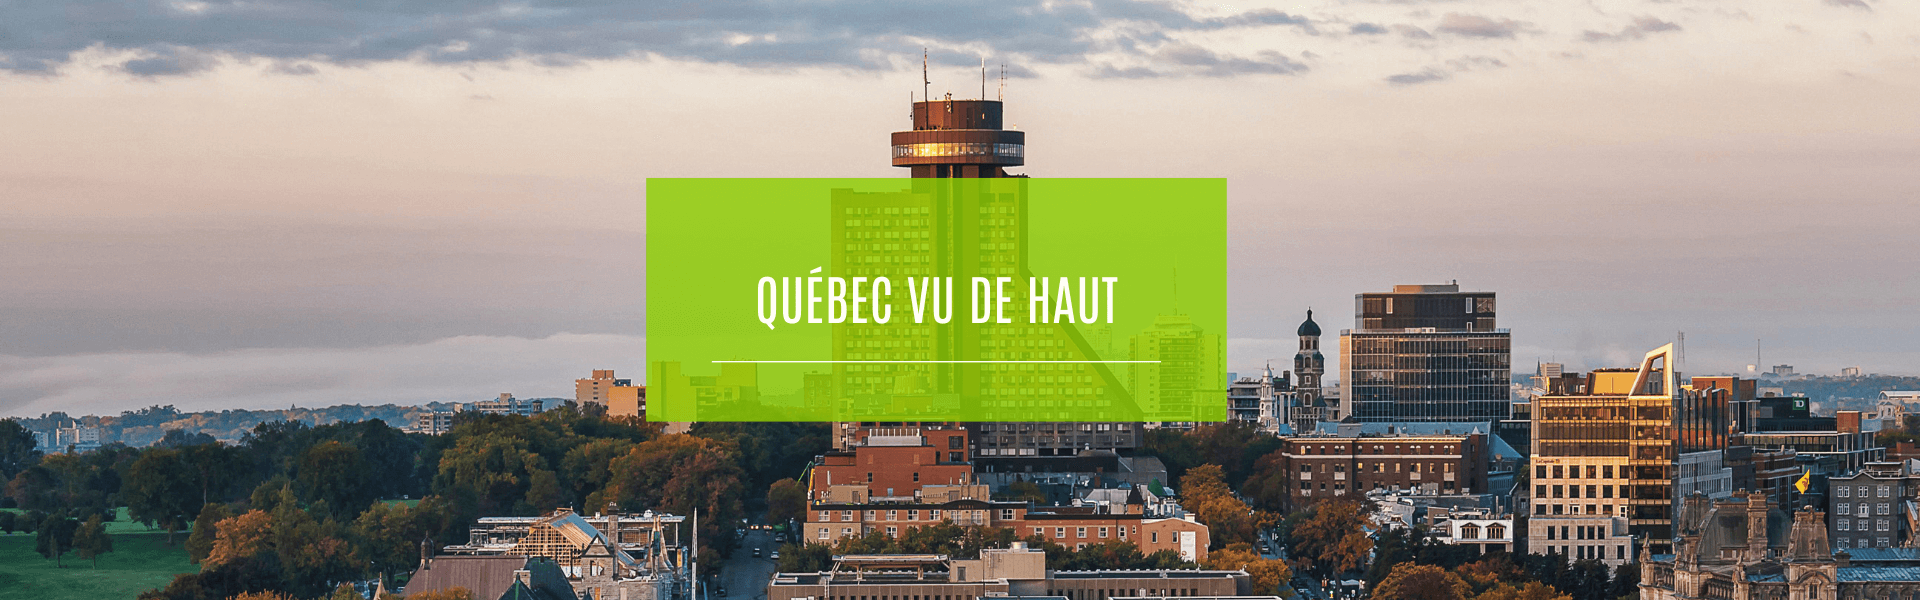 Québec vu de haut